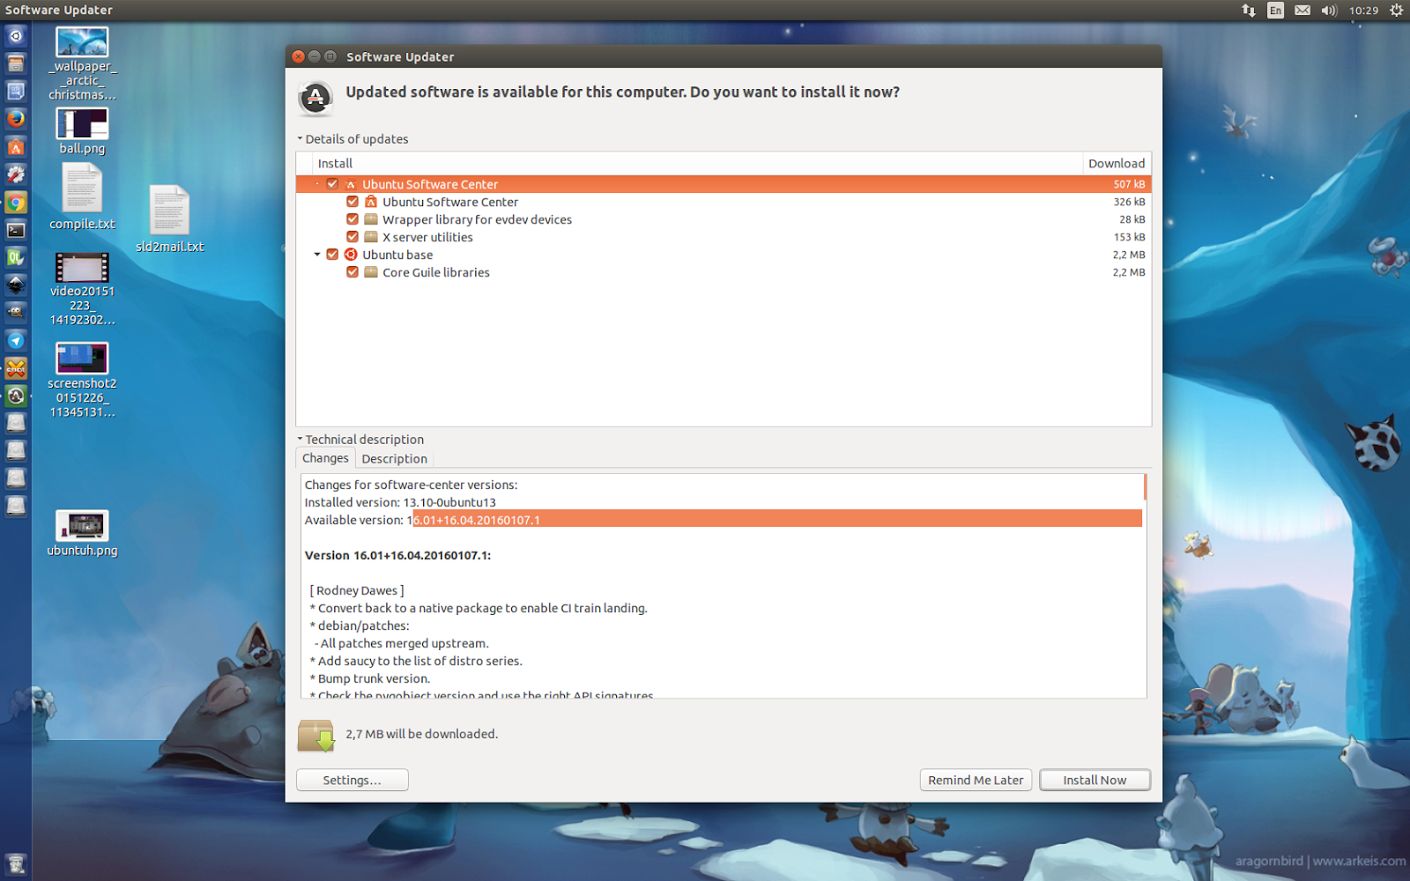 ubuntu-software-center-just-got-a-massive-update-on-ubuntu-16-04-lts-498617-2